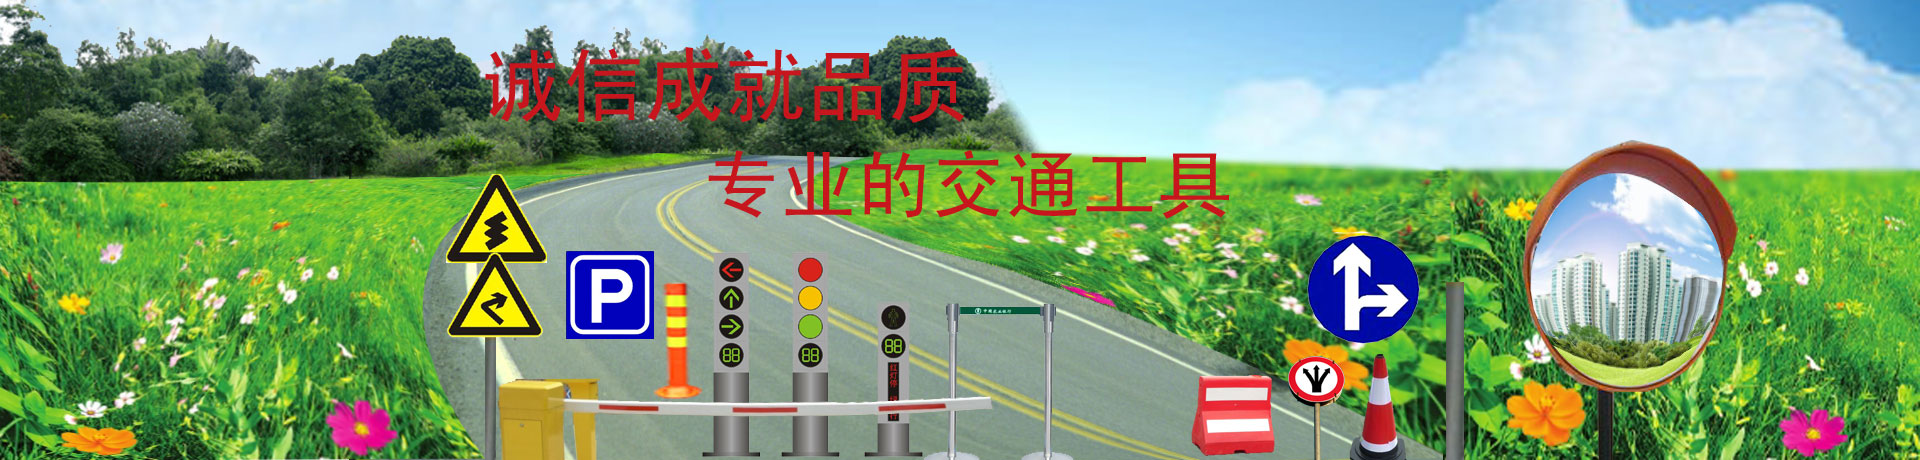 公路标志杆的检验标准云南昆明交通标志牌制作跟你浅谈